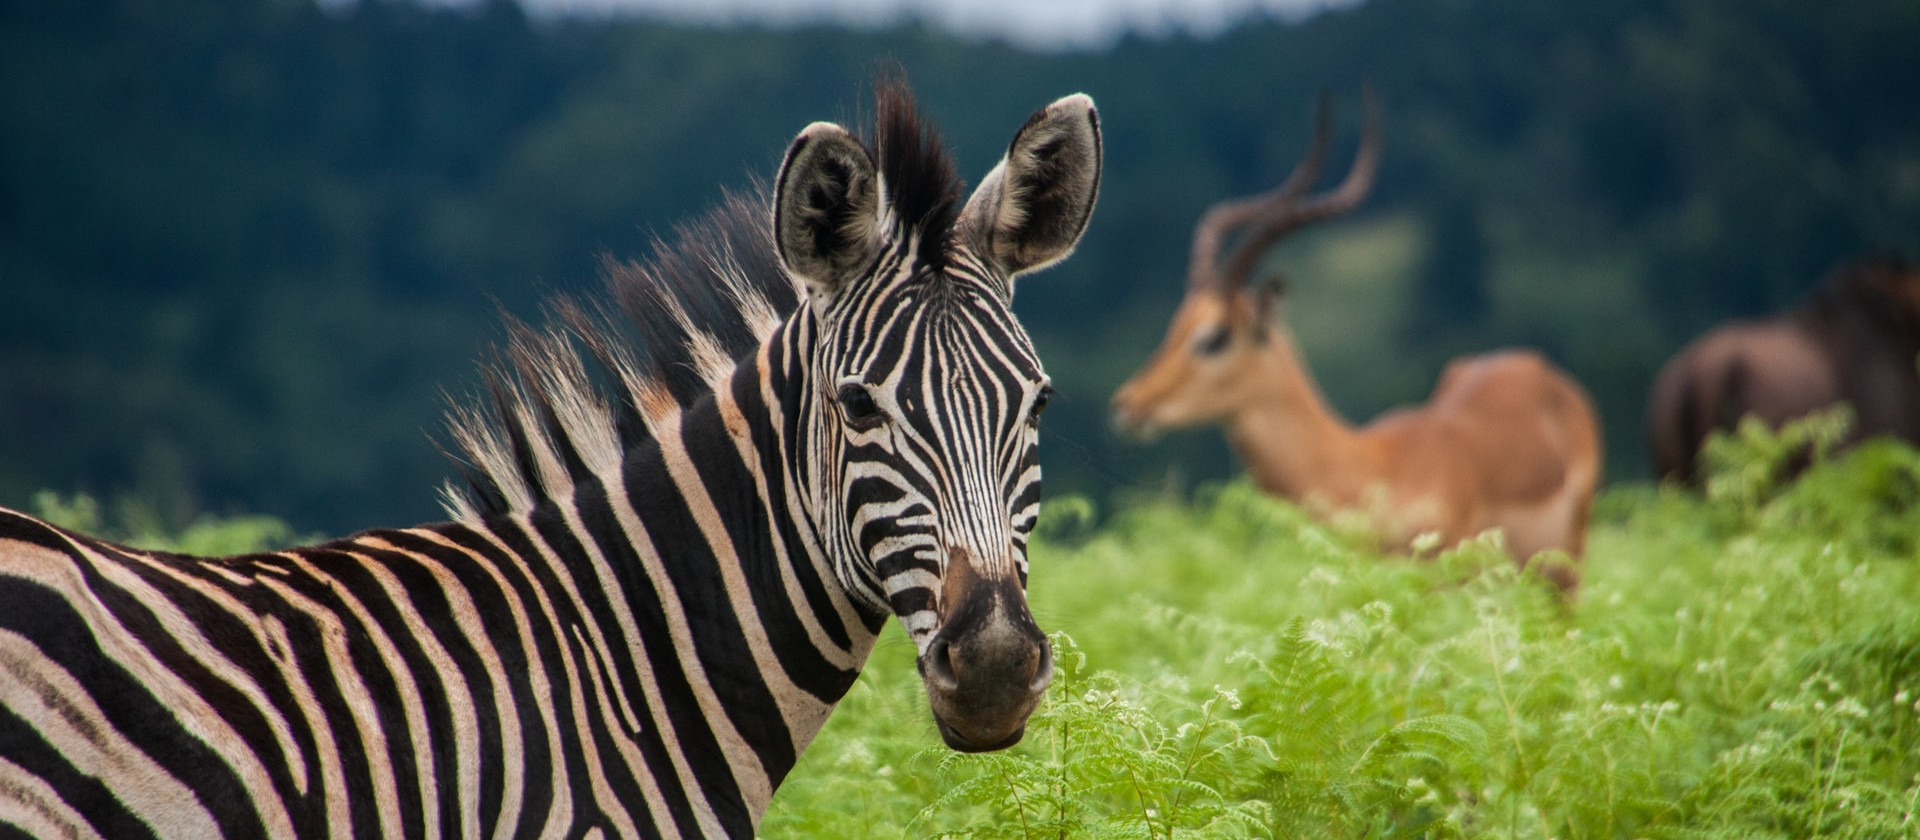 Zebra in Eswatini (formerly called Swaziland)